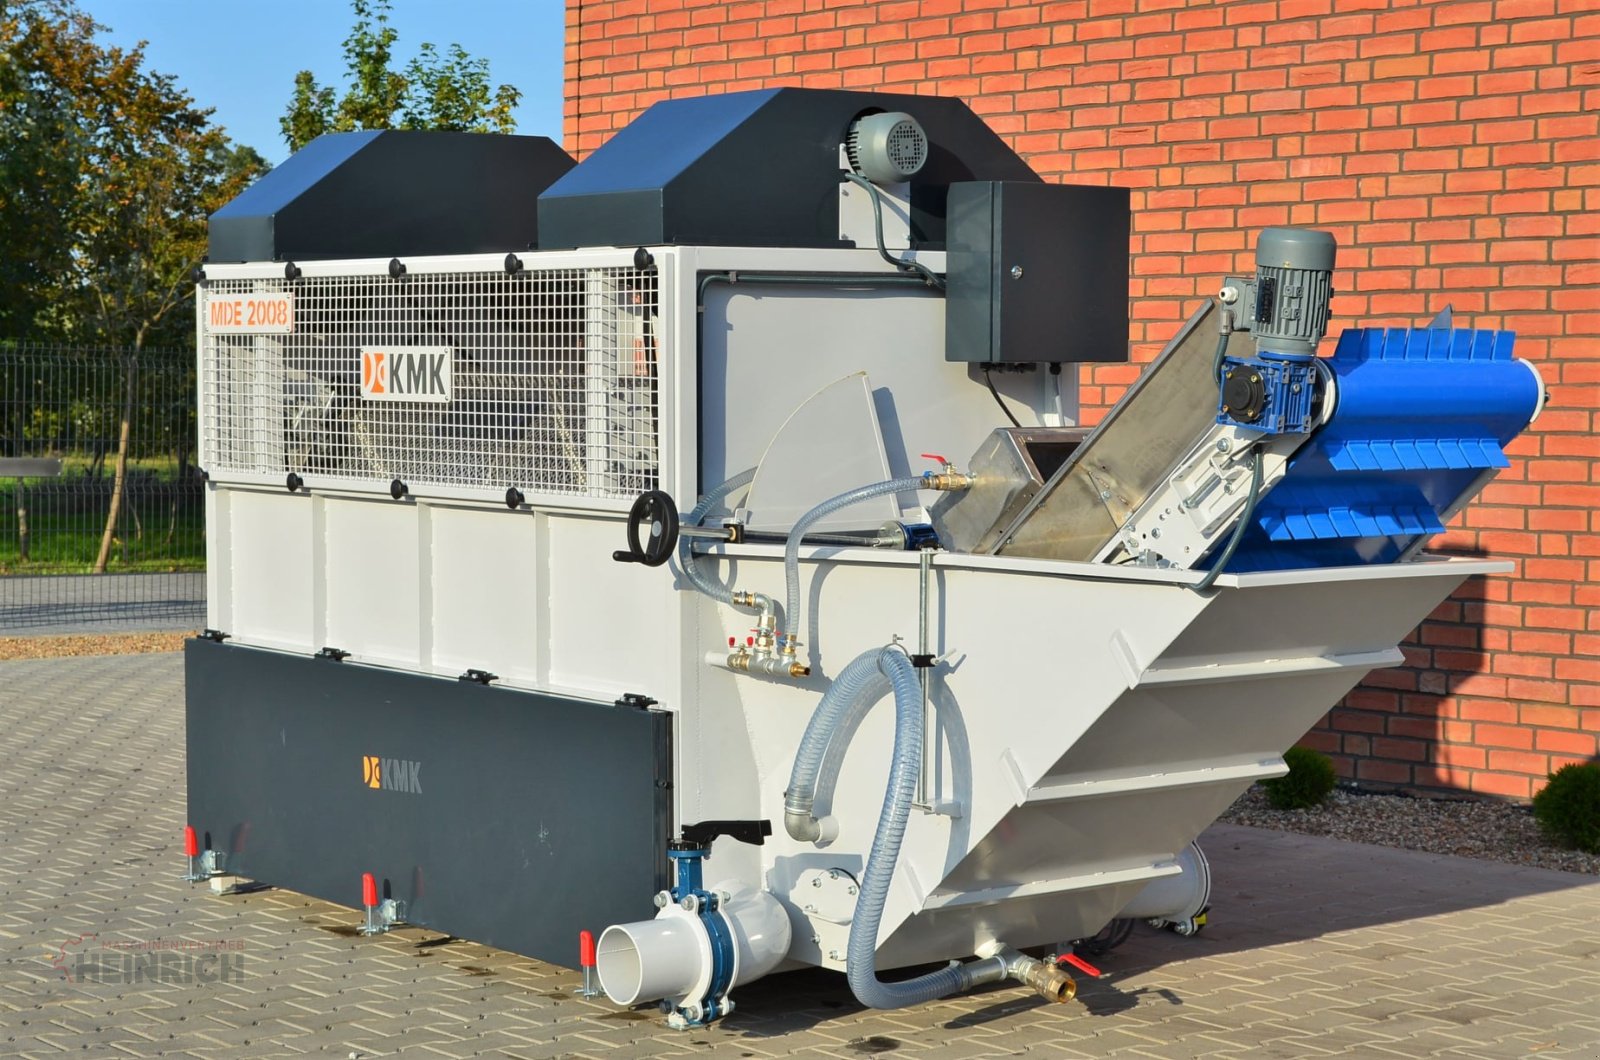 Sonstige Kartoffeltechnik des Typs KMK Trommelwaschmaschine MD2008 Kartoffel waschen, Waschmaschine, Neumaschine in Ehekirchen (Bild 1)